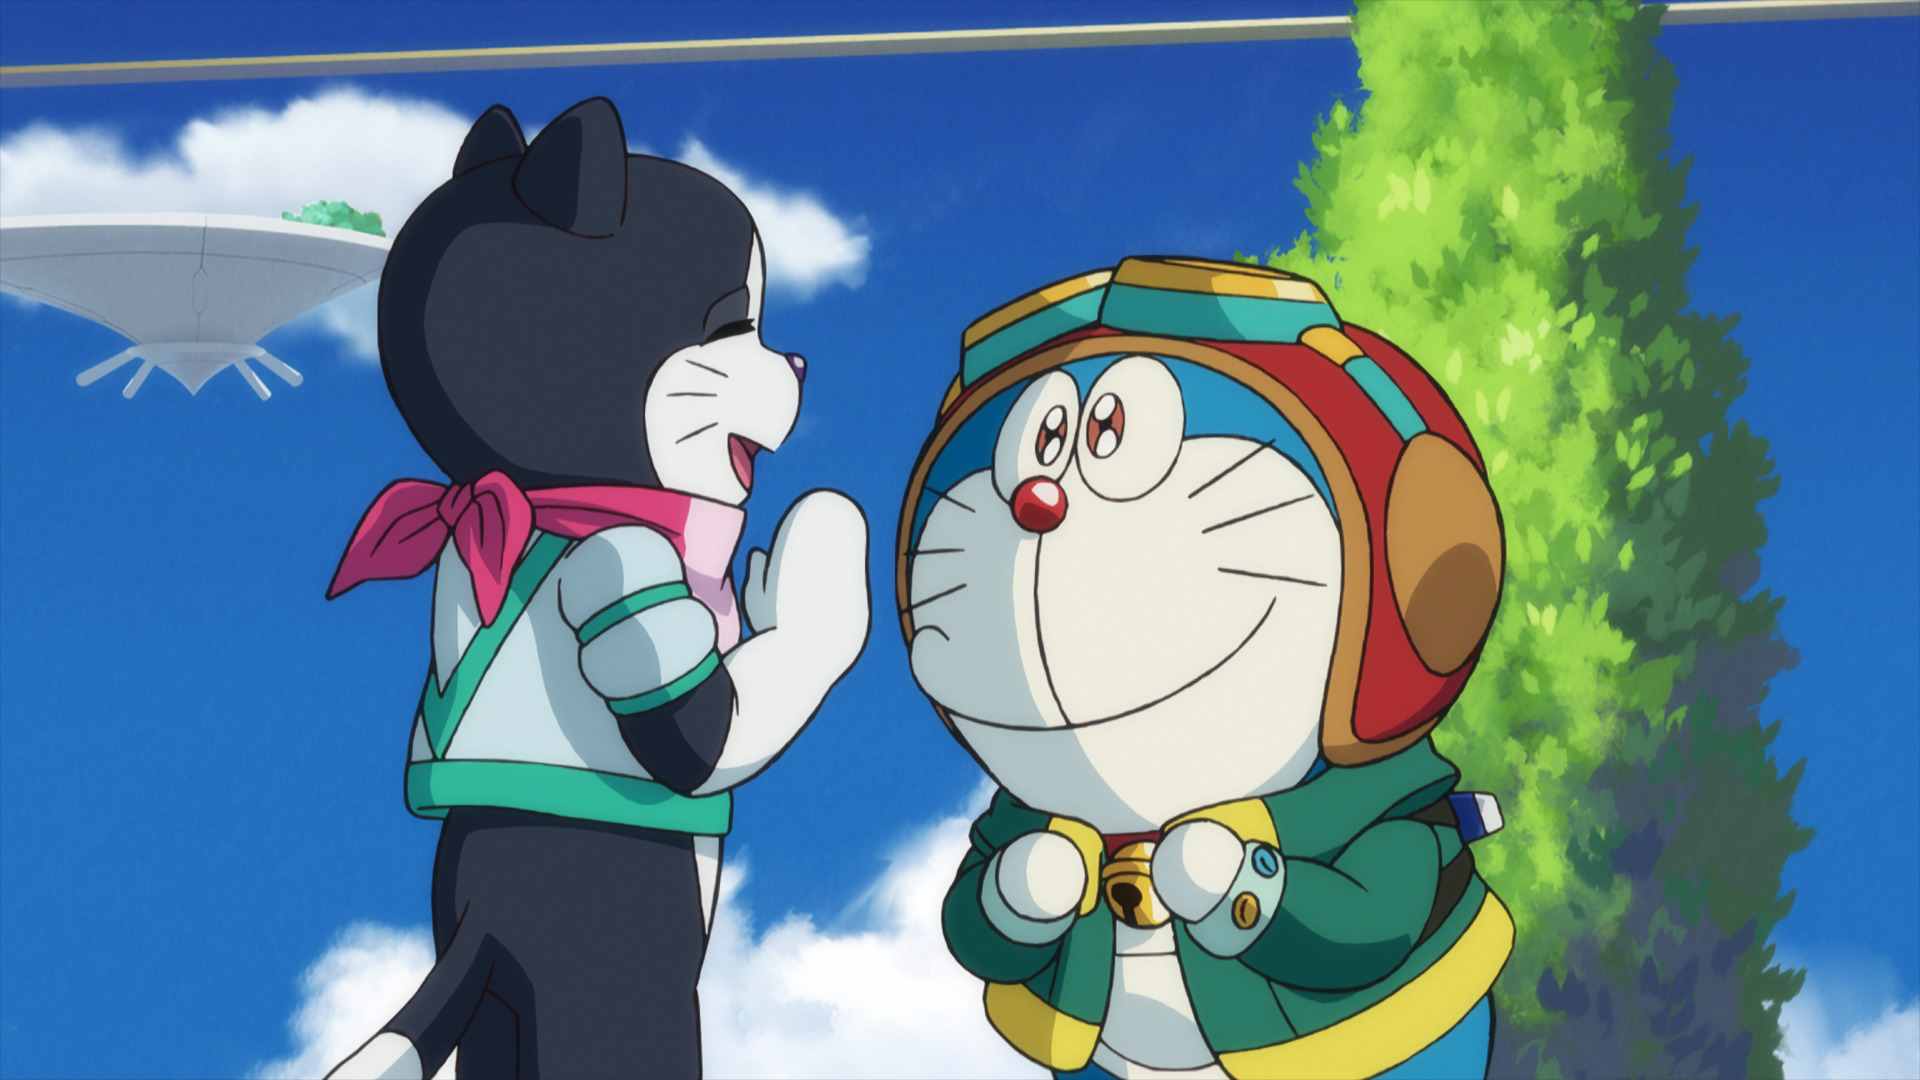 Phần phim điện ảnh mới của Doraemon kể về câu chuyện tình bạn nhân văn, lòng dũng cảm đầy tính nhân văn.